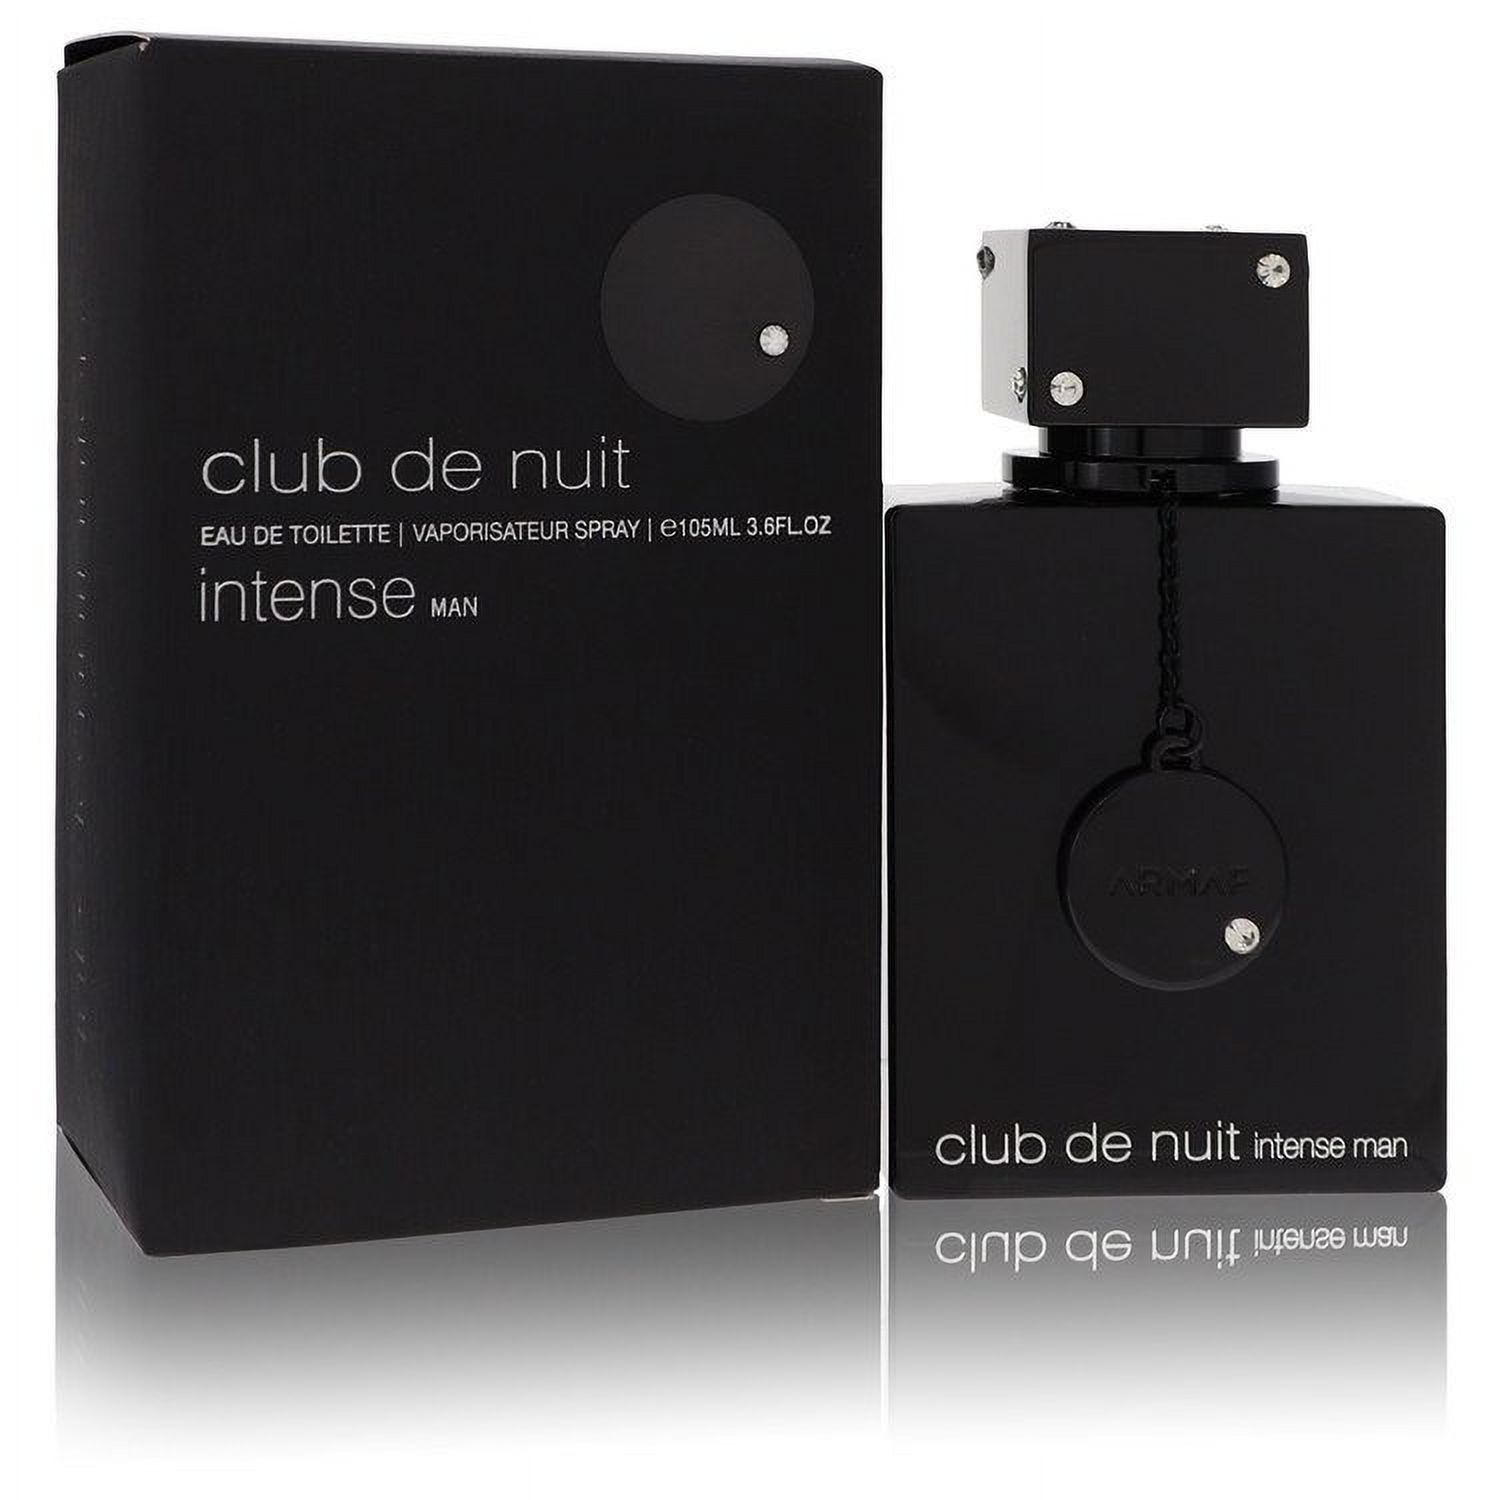 Club De Nuit Intense by Armaf Eau De Toilette Spray 3.6 oz - image 1 of 1